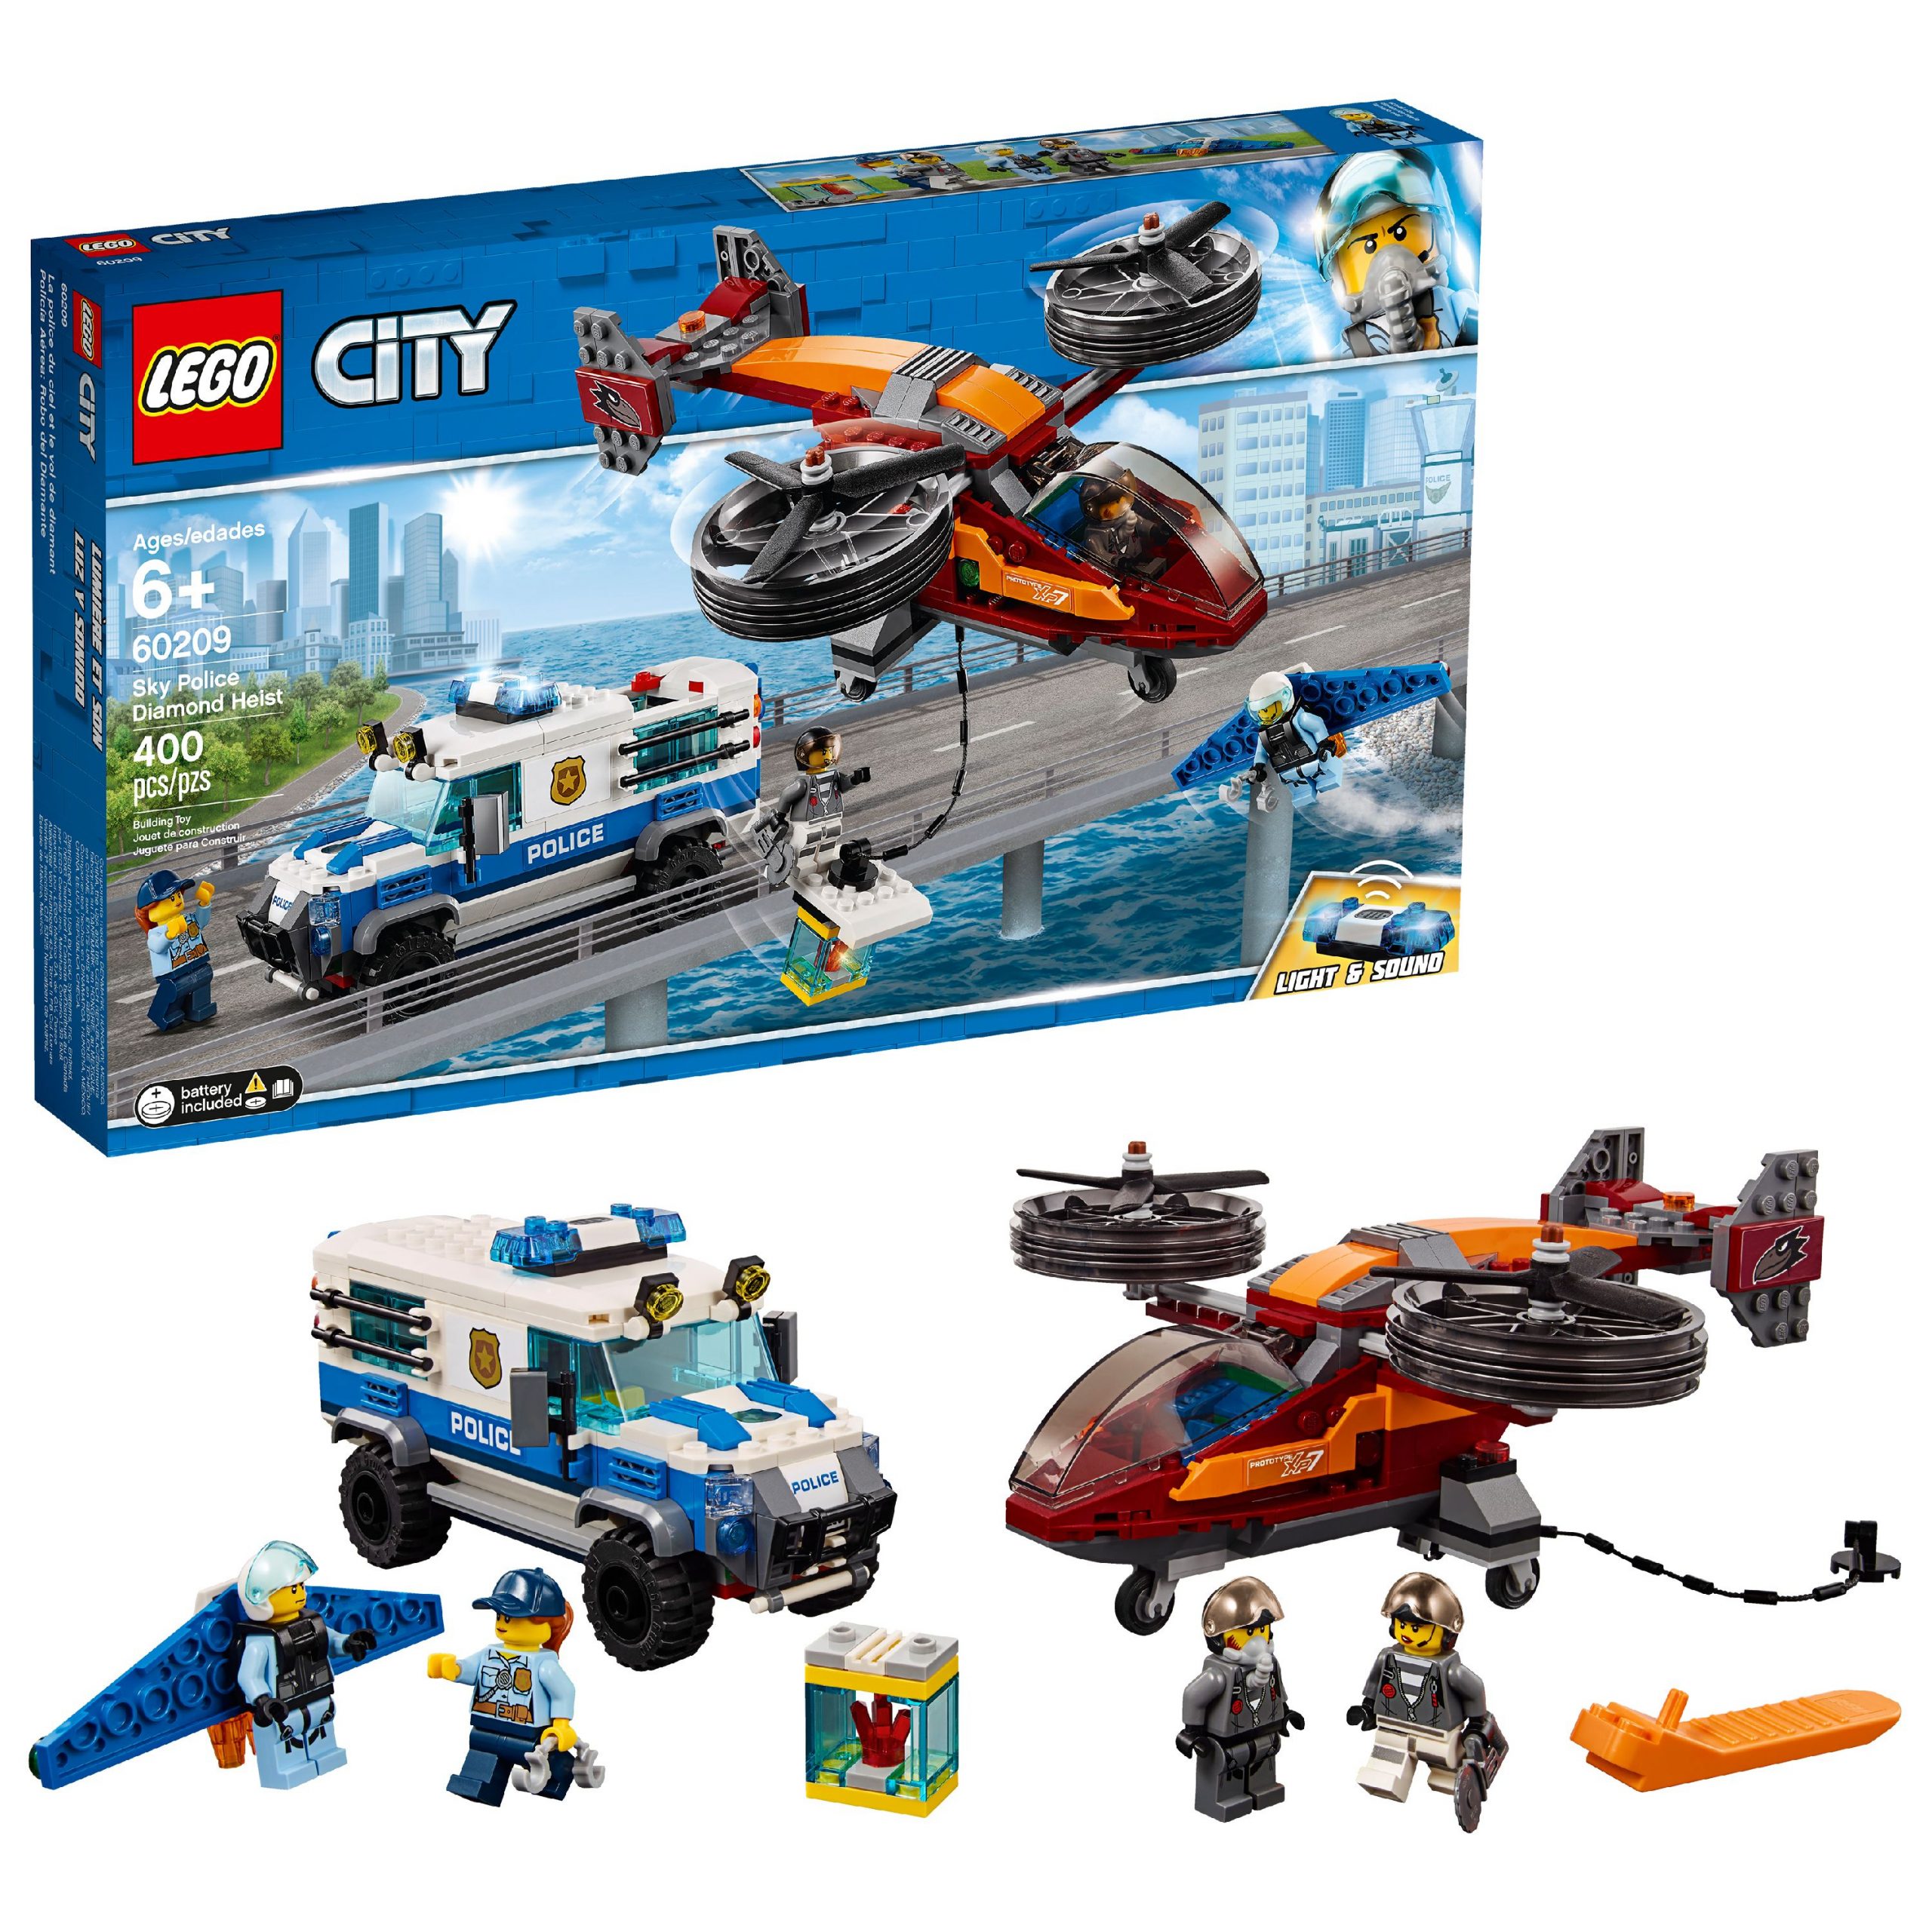 Lego City Police Sky Police Diamond Heist 60209 Police serapportantà Dessin Animé Lego City Police